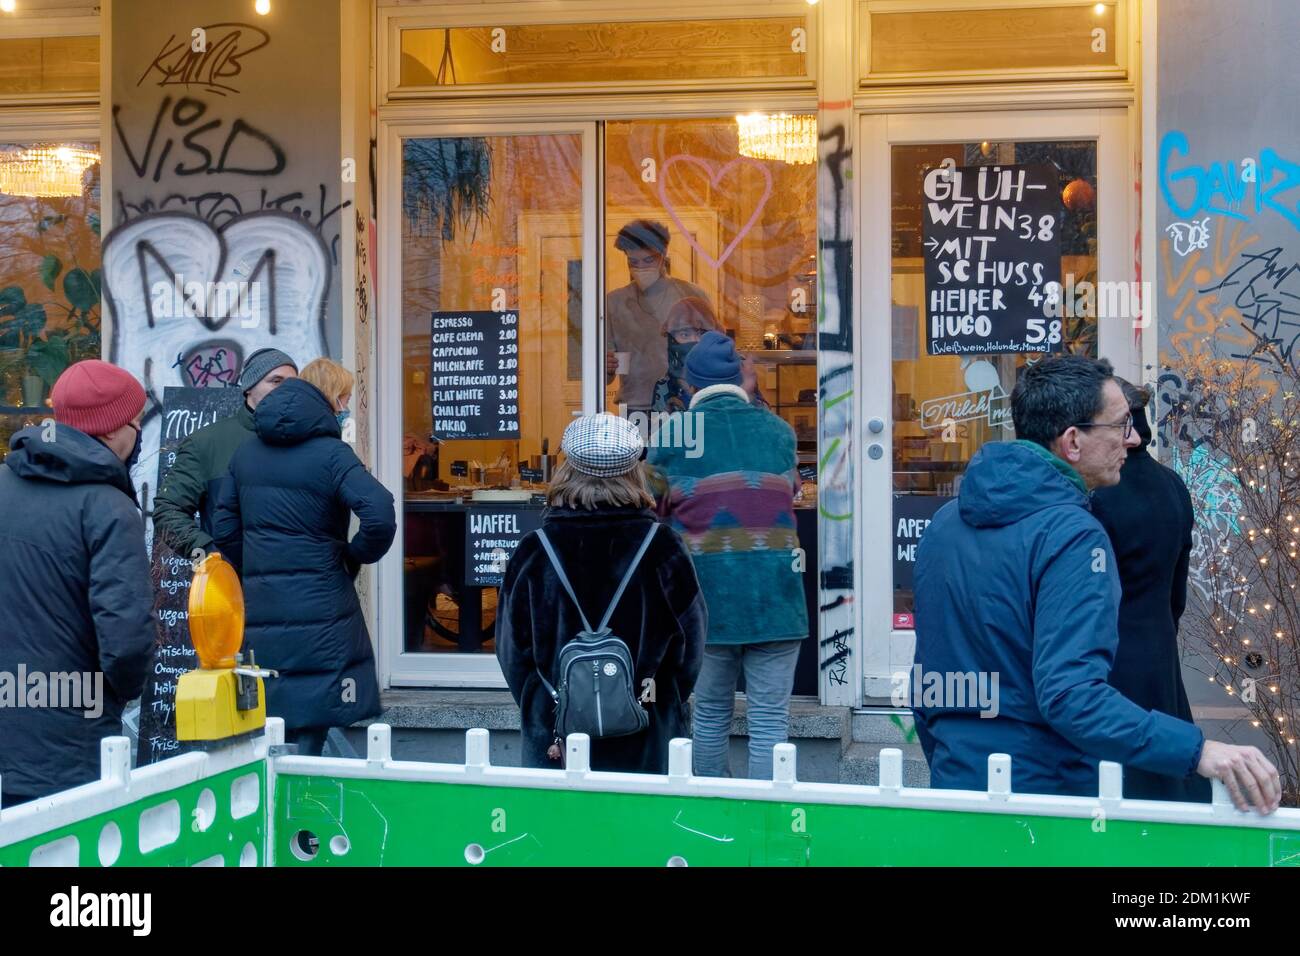 Schlange vor Gluehweinstand in der Grimmestrasse in Kreuzberg waehrend des Corona-lockdowns am letzten Wochende vor dem harten Lockdown ab 16. Dezembe Foto de stock